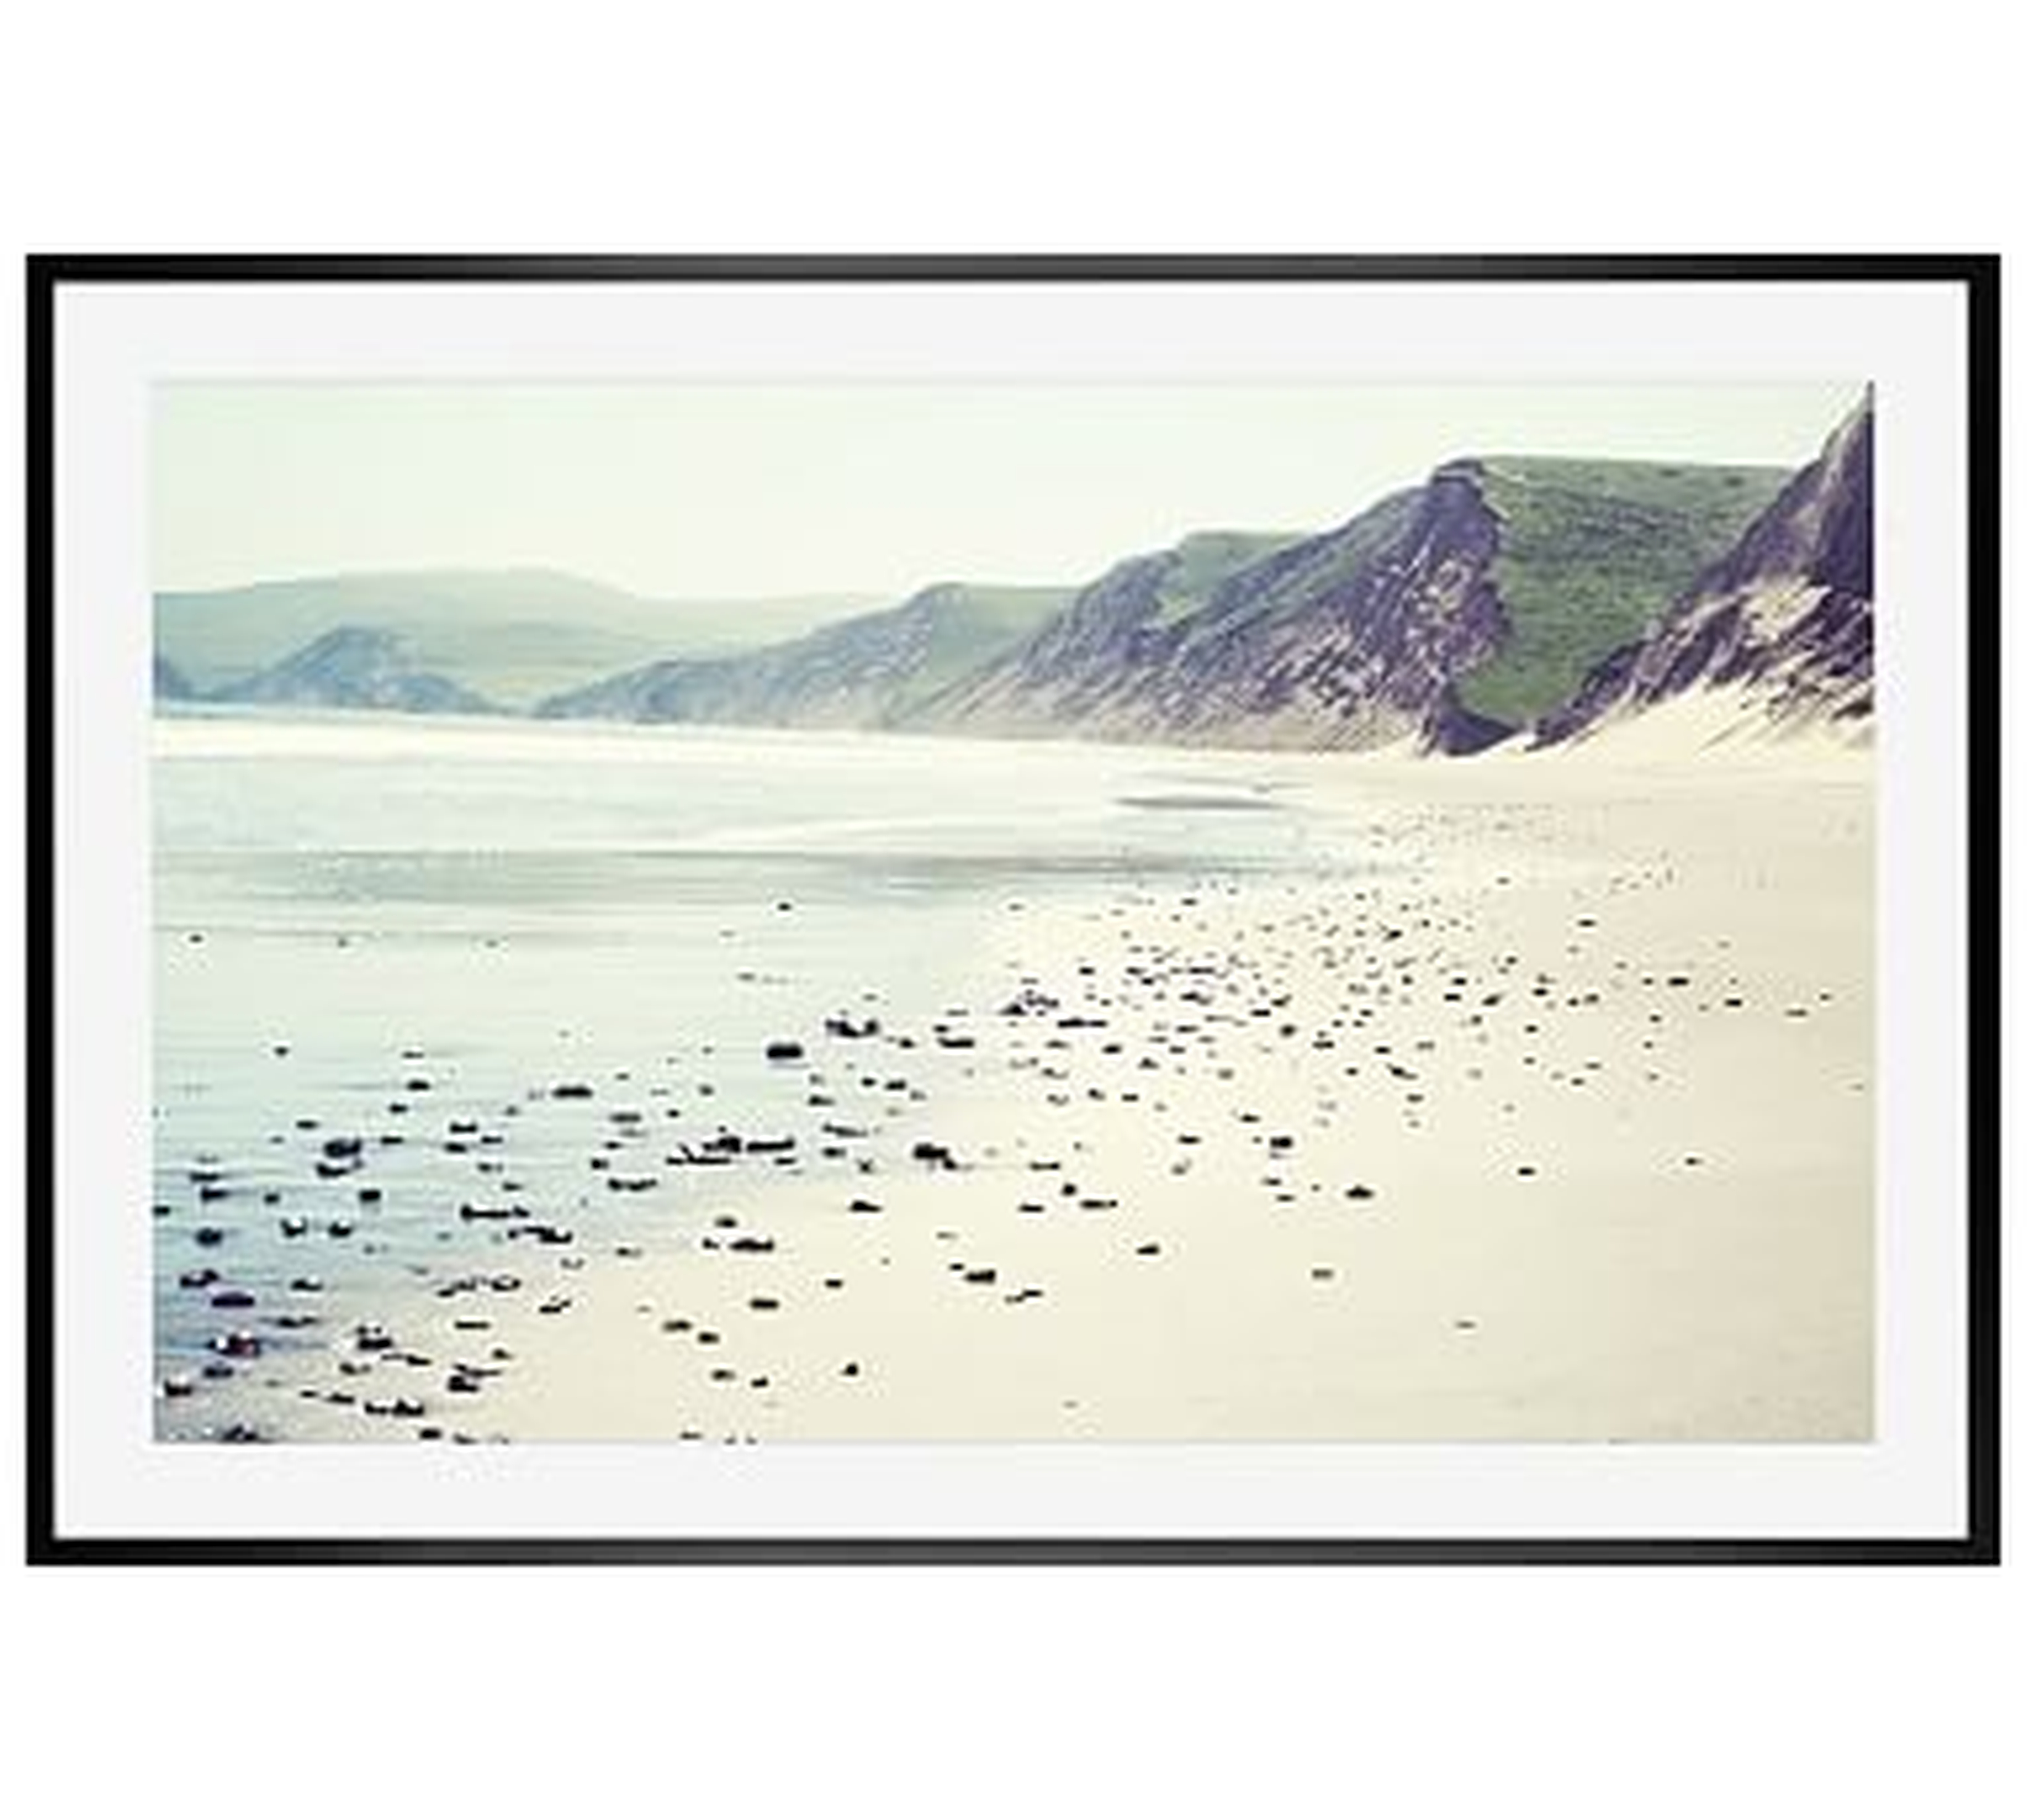 Pebbly Beach Framed Print by Lupen Grainne, 28x42", Wood Gallery Frame, Black, Mat - Pottery Barn